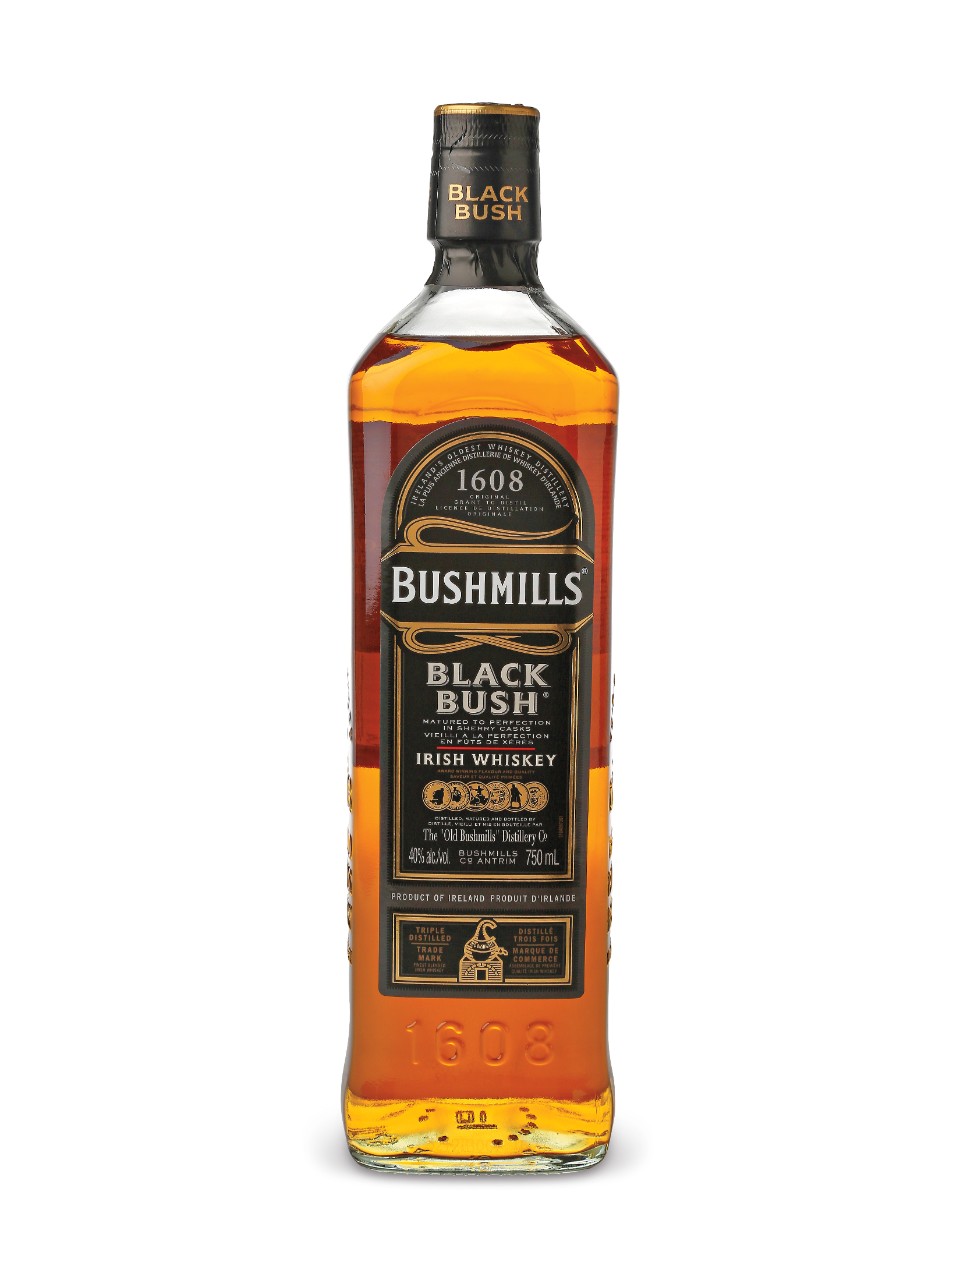 4. Irish Whiskey – Bushmills Black Bush